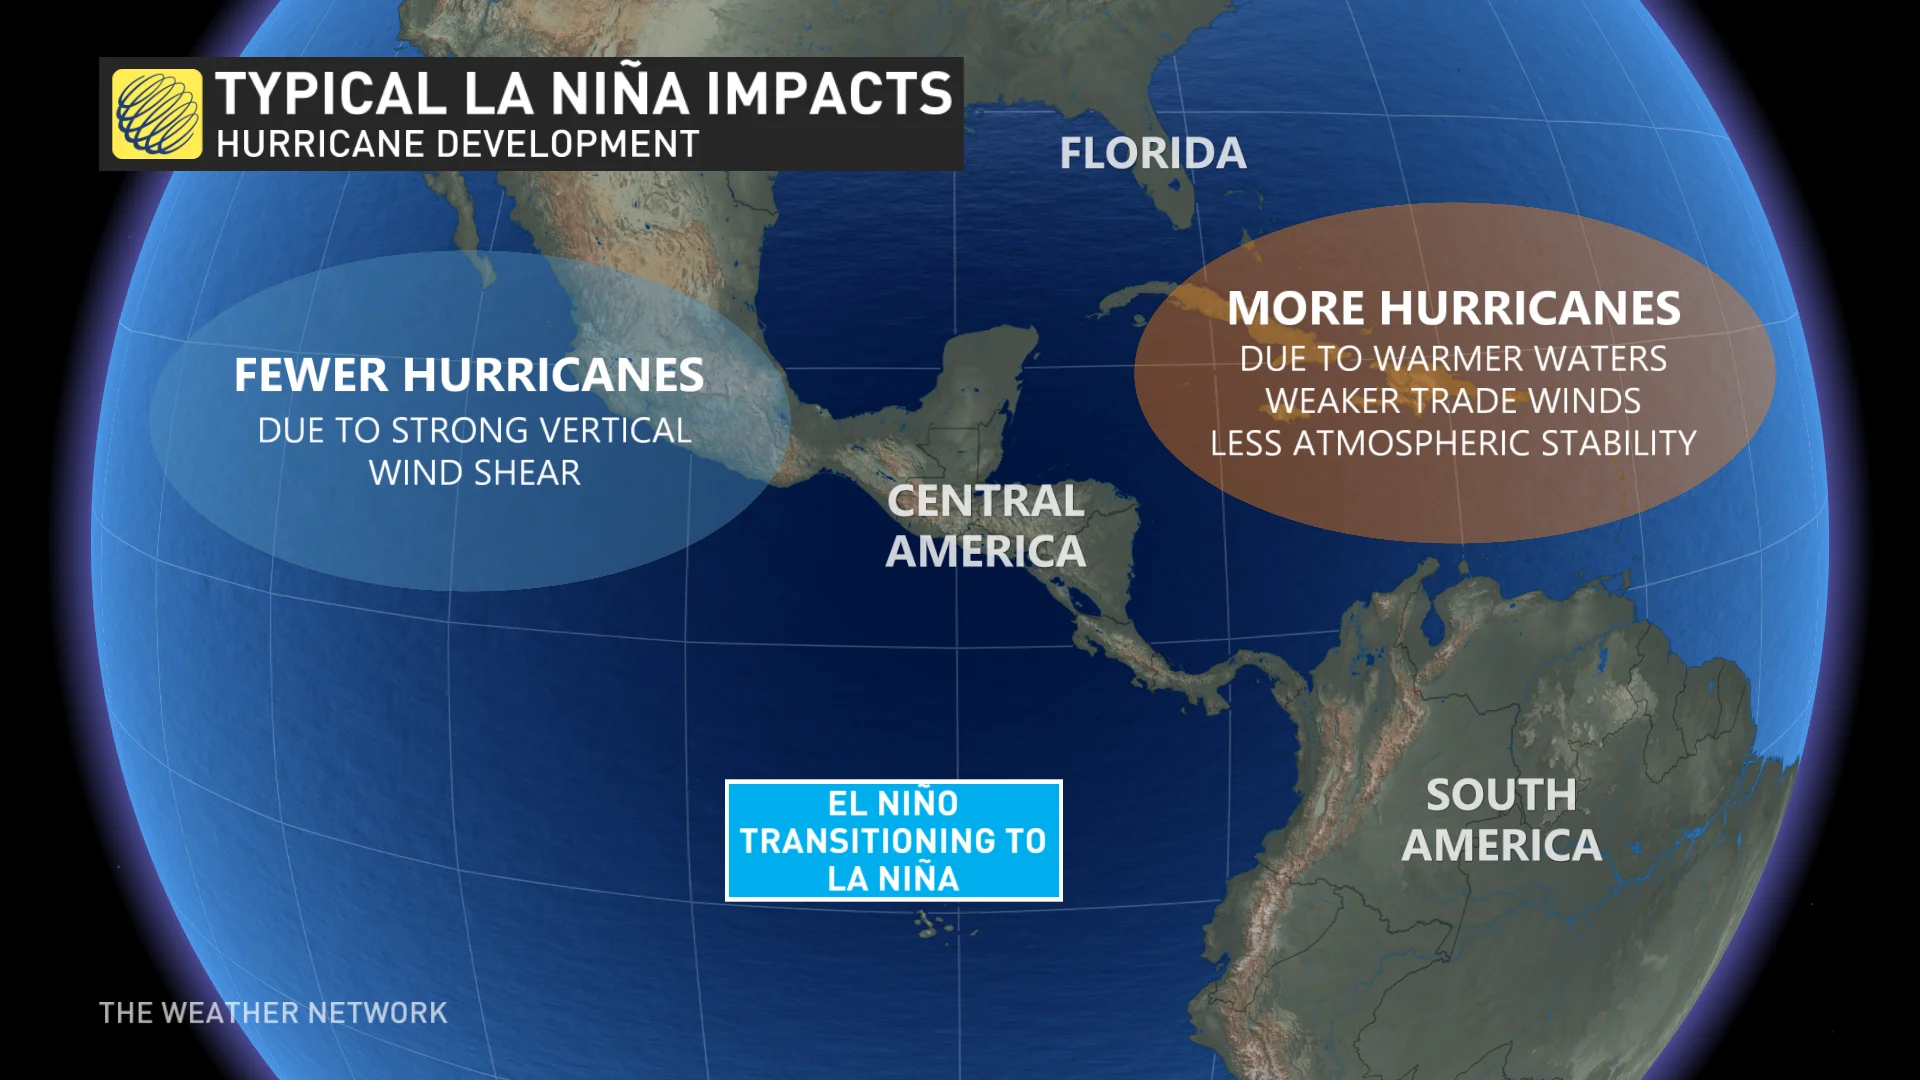 El Niño Transitioning to La Niña Hurricane Impacts